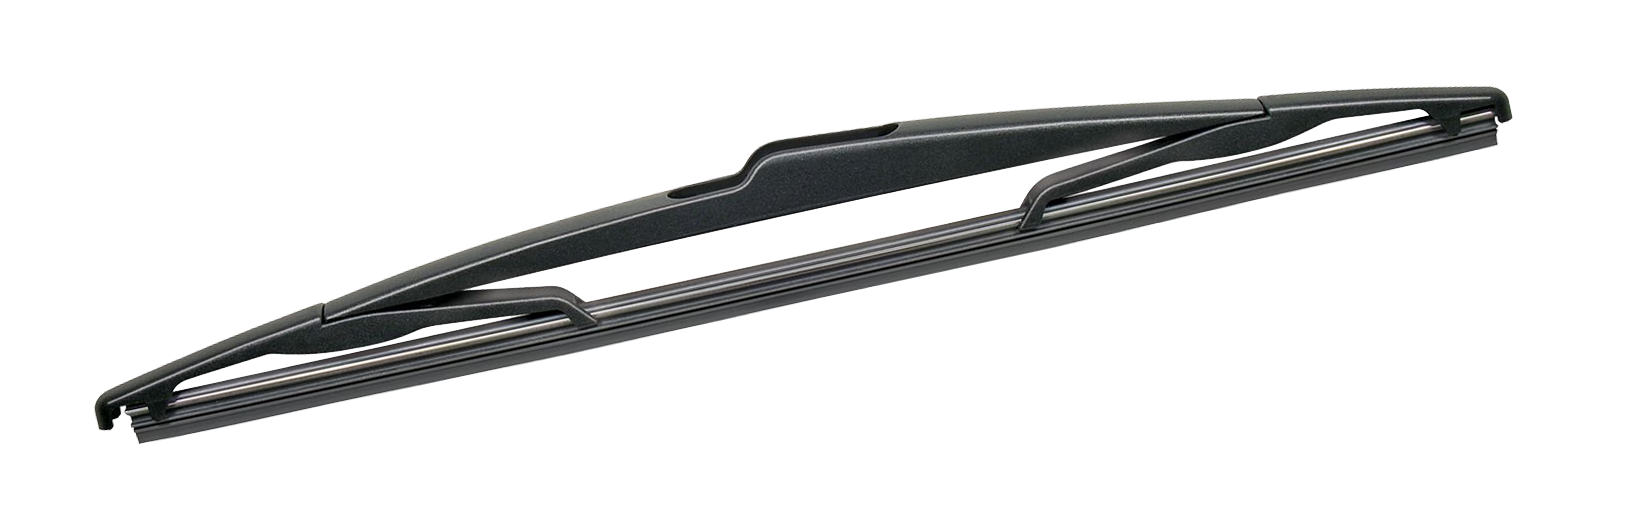 Rear Wiper Blade for Citroen C3 2002-2010 Hatch 